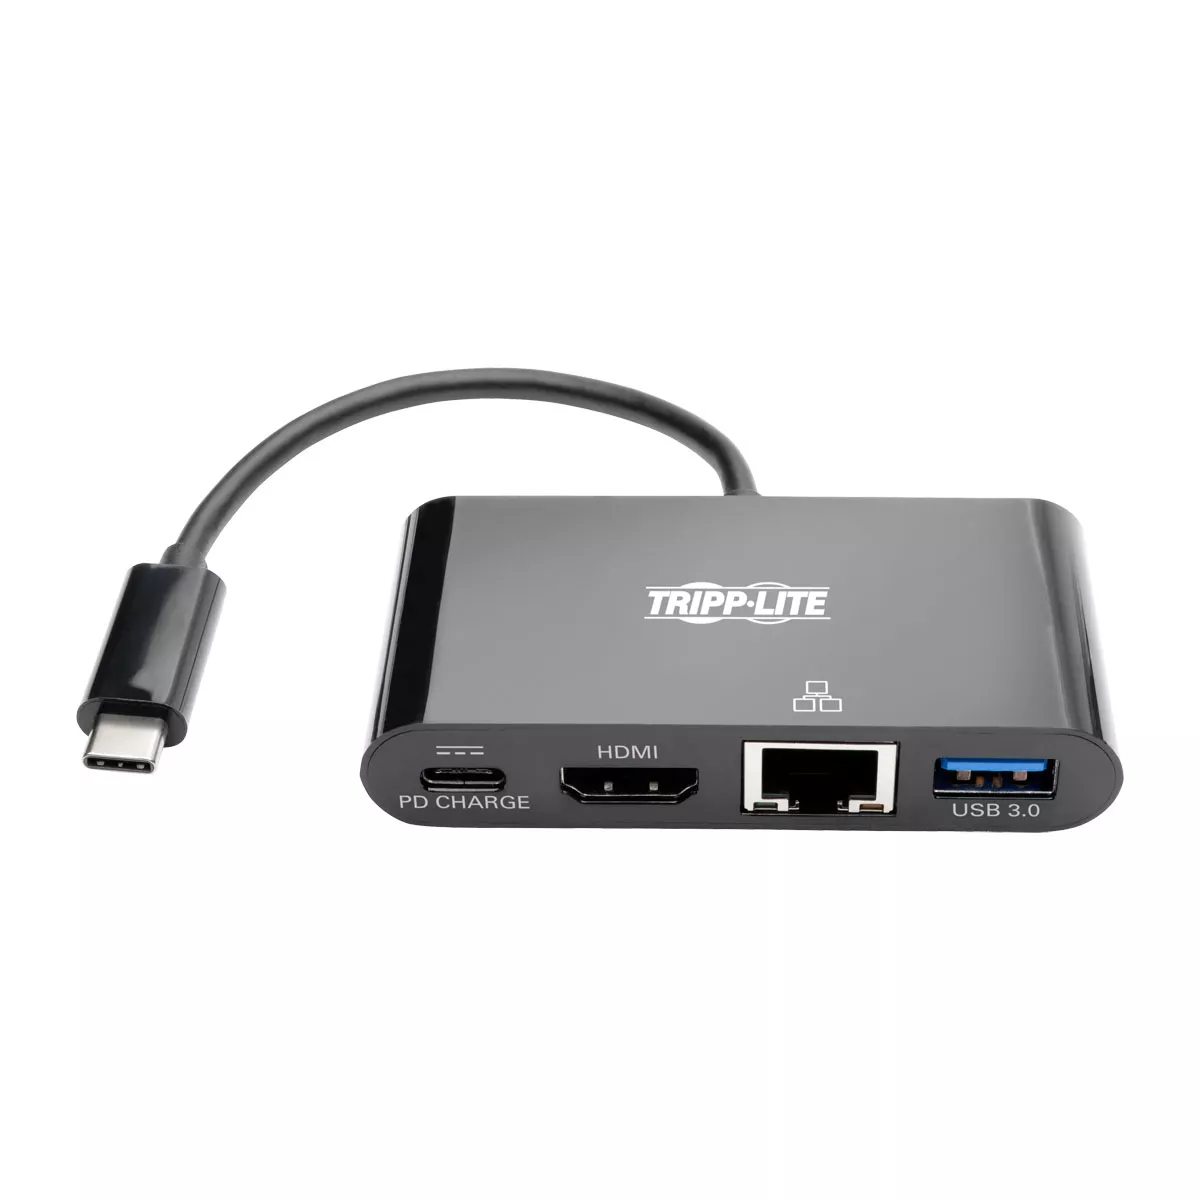 Vente EATON TRIPPLITE USB-C Multiport Adapter - HDMI USB Tripp Lite au meilleur prix - visuel 6